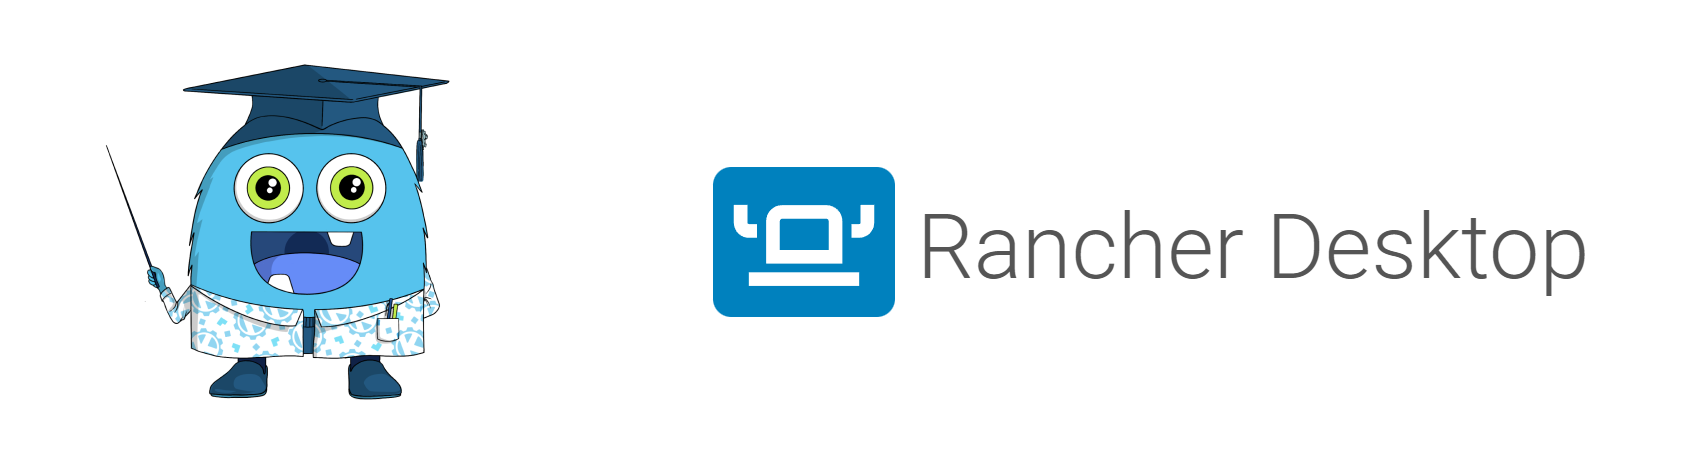 Replacing Docker Desktop with Rancher Desktop